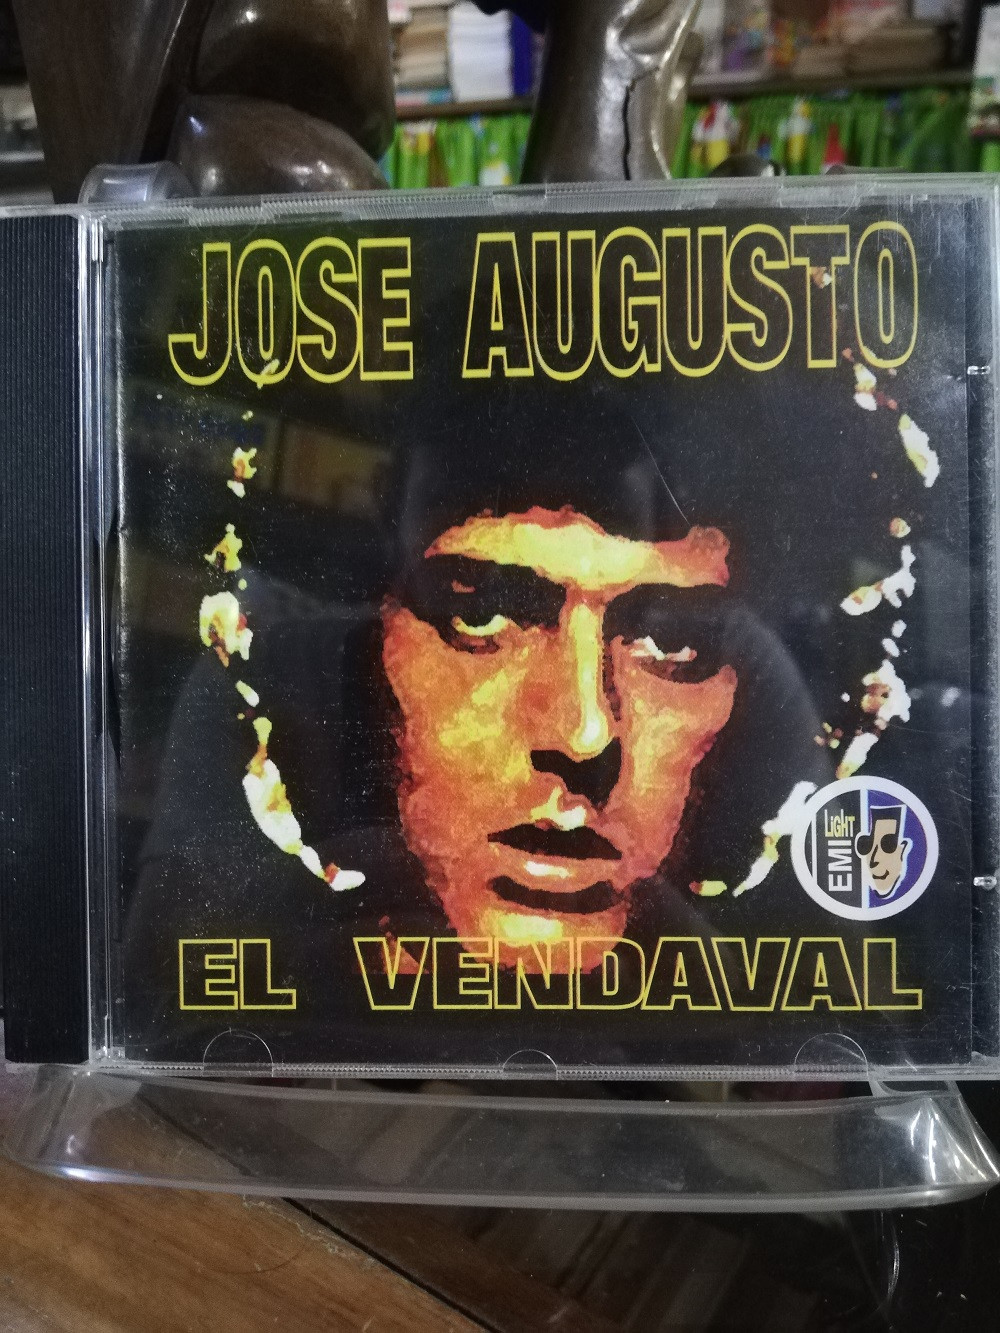 Imagen CD JOSÉ AUGUSTO - EL VENDAVAL